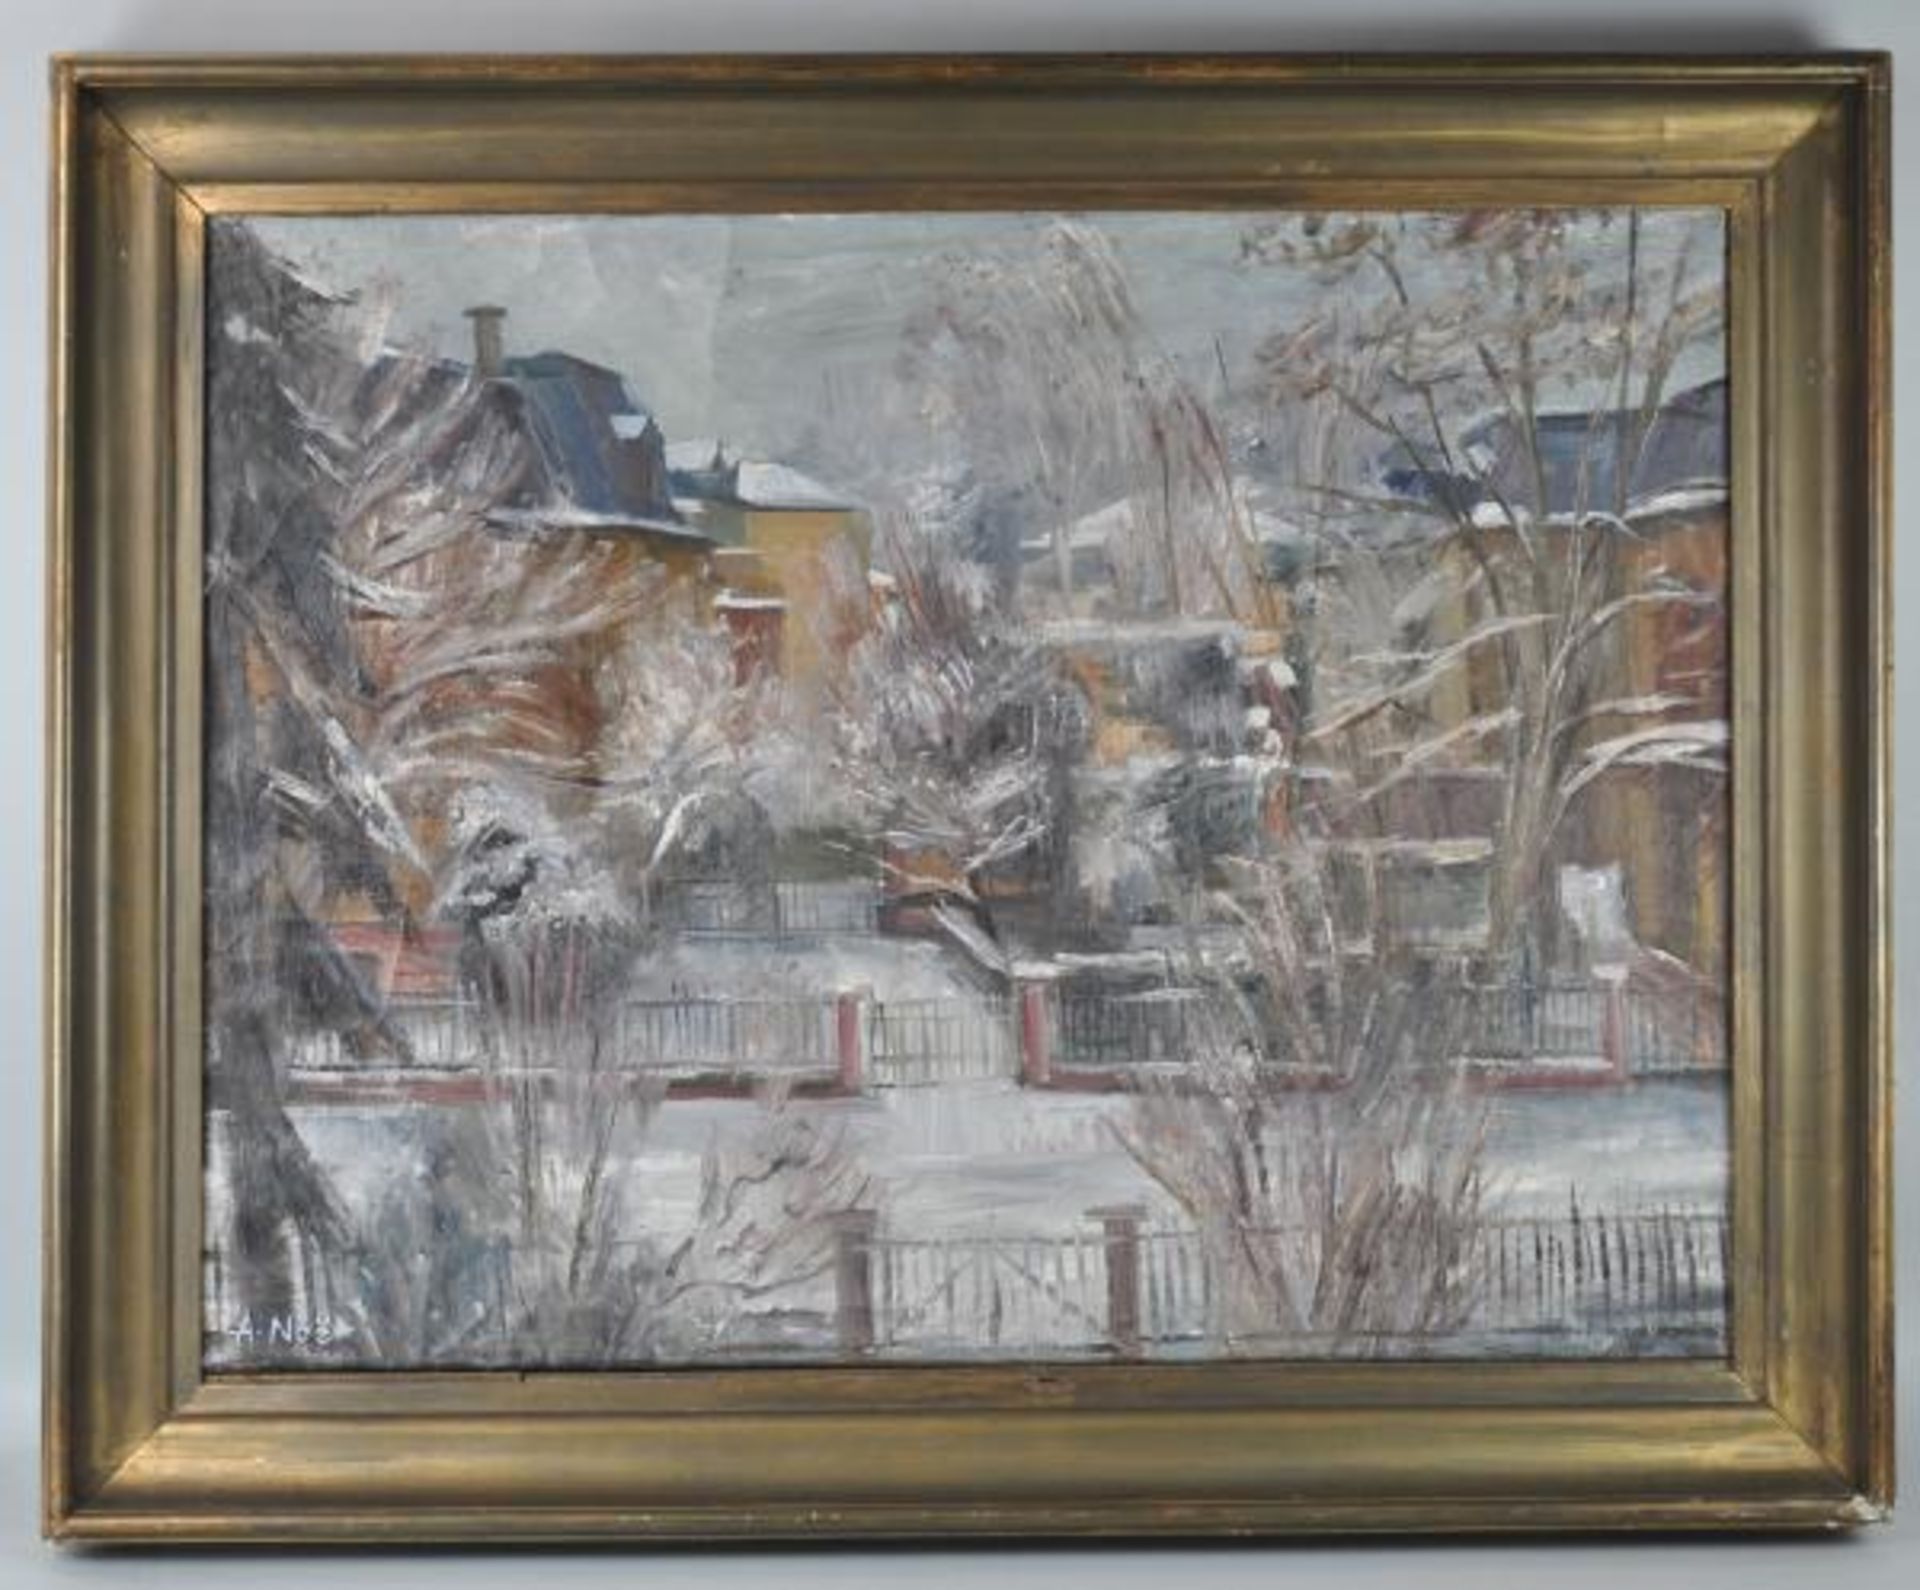 NOE Alfred (1903 Weiler/Höri - 2000 Karlsruhe) "Atelierausblick" im Winter, Blick aus dem Atelier - Bild 2 aus 4